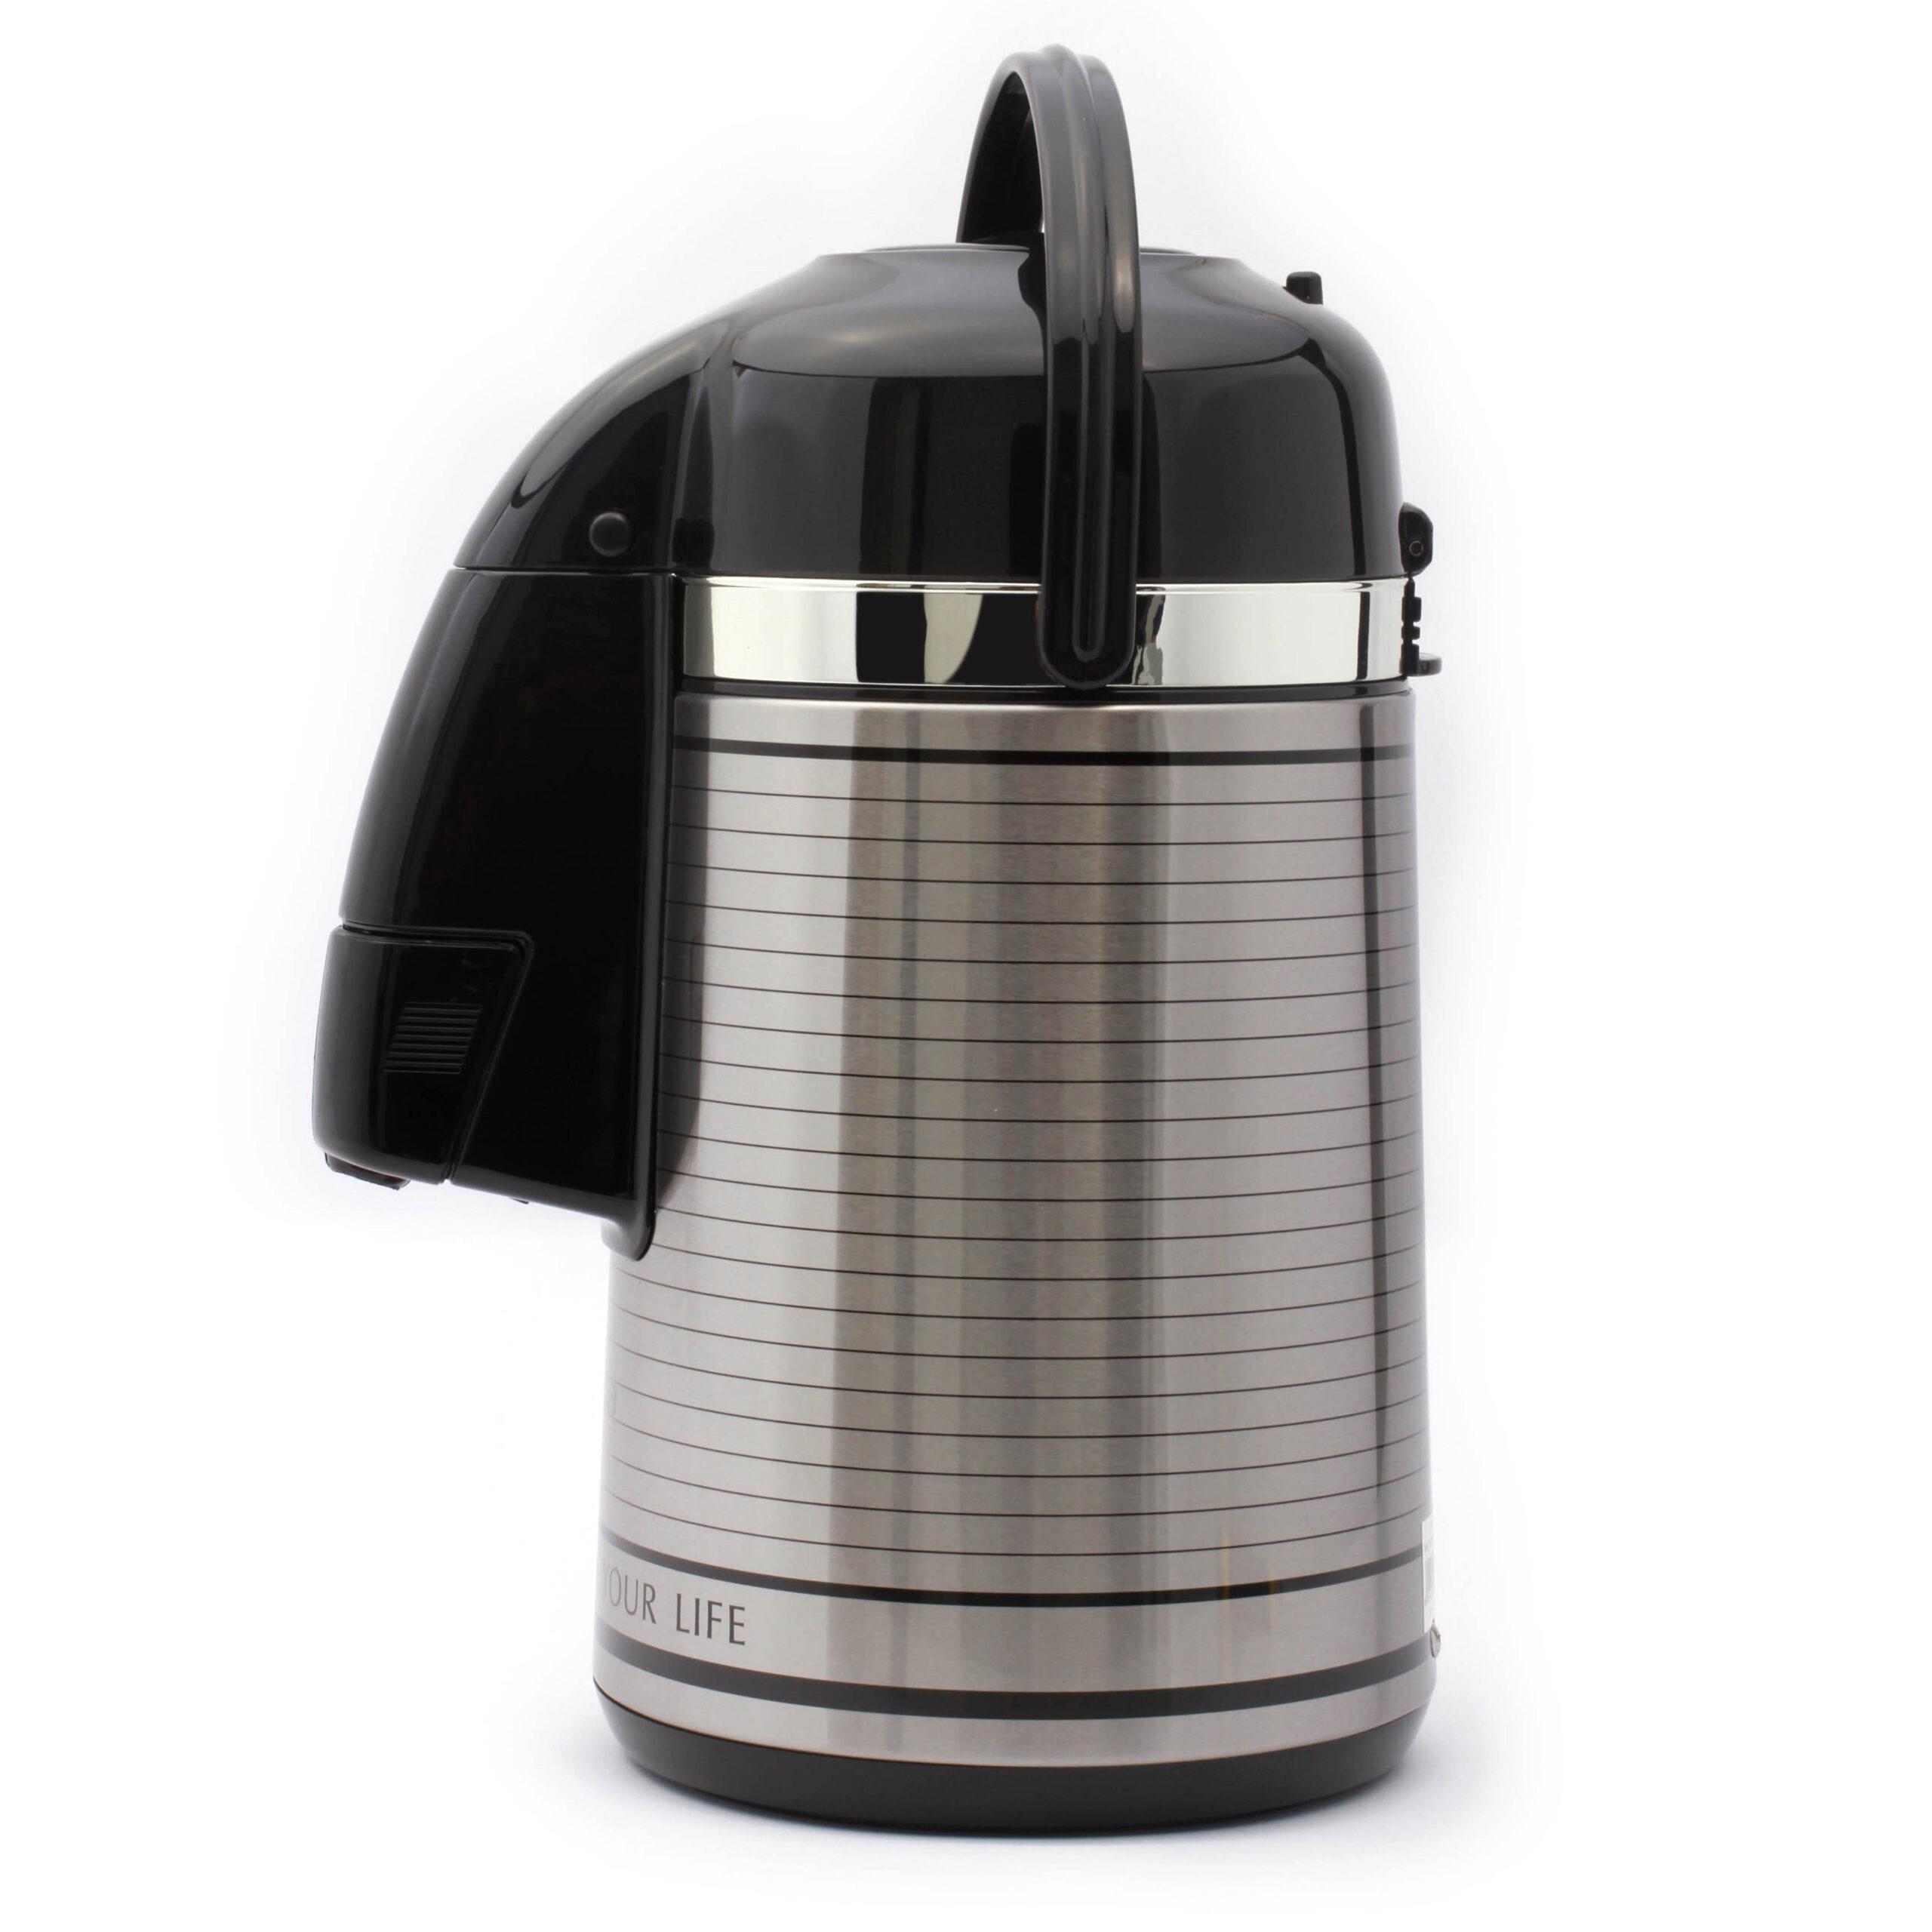 ترمس شاي ( حافظة حرارة ) 3 لتر - فضي Royalford  - Airpot Glass Vacuum Flask